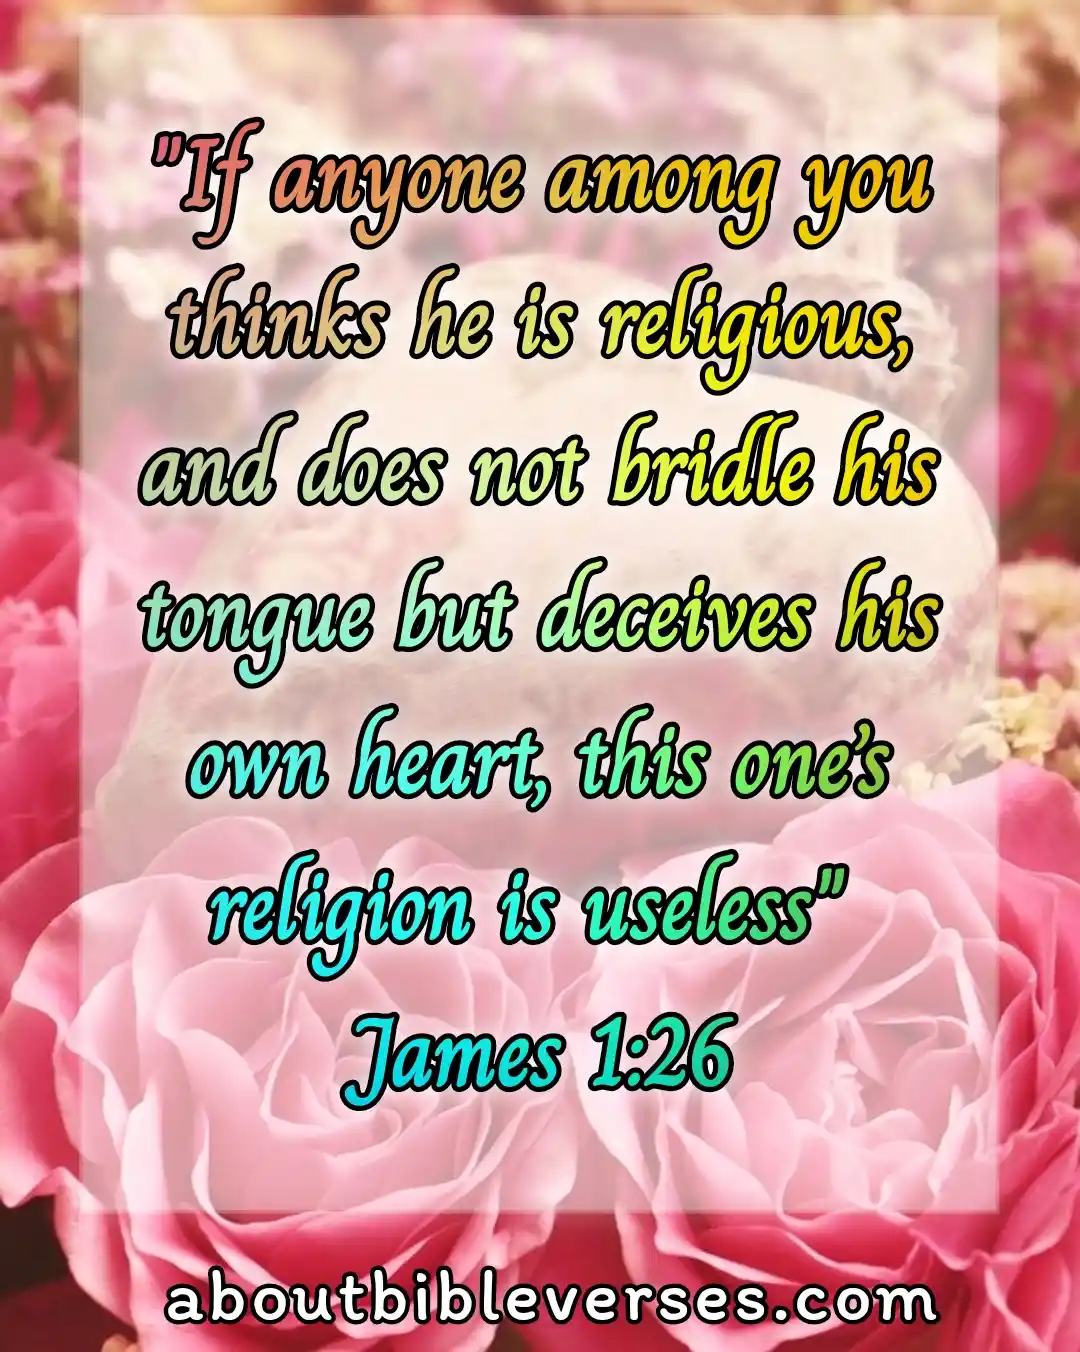 today bible verse (James 1:26)